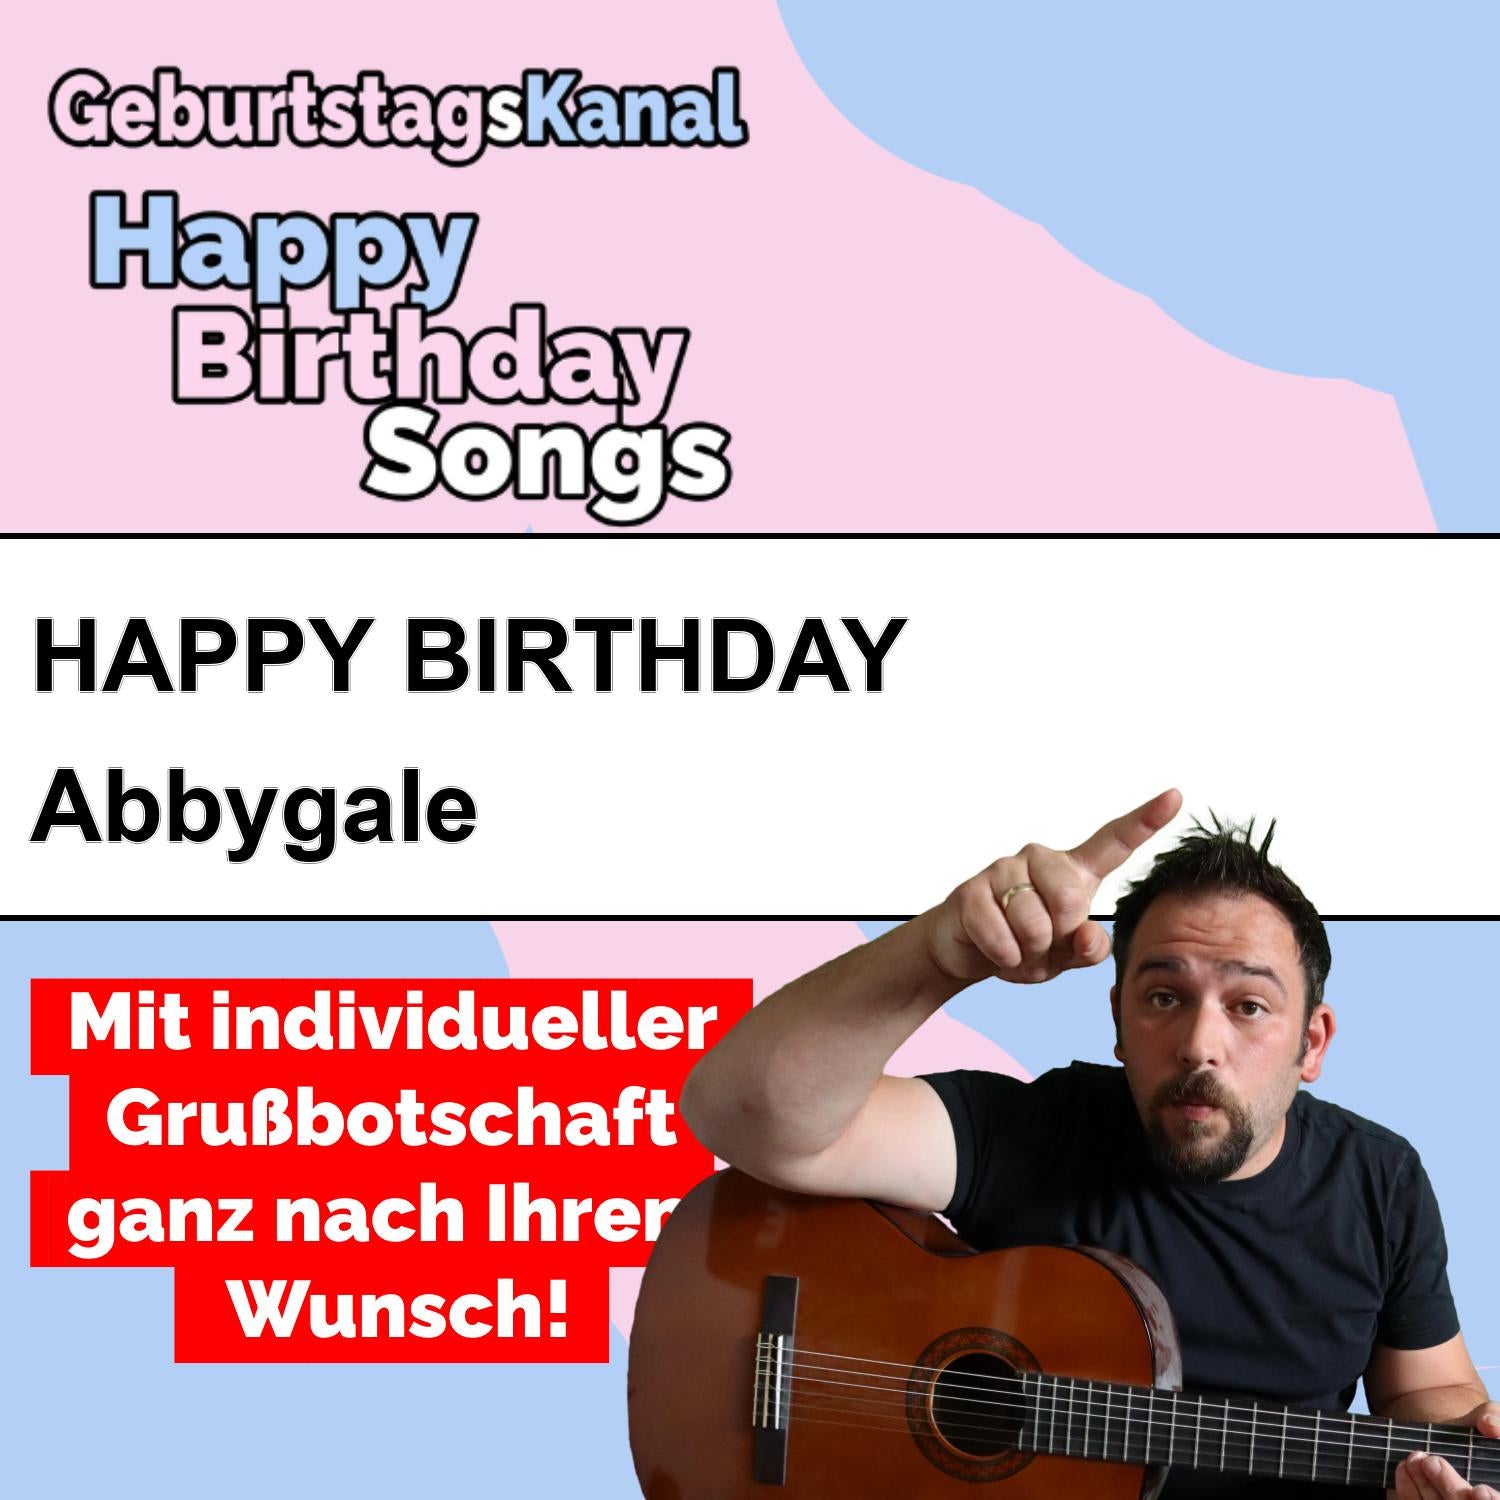 Produktbild Happy Birthday to you Abbygale mit Wunschgrußbotschaft